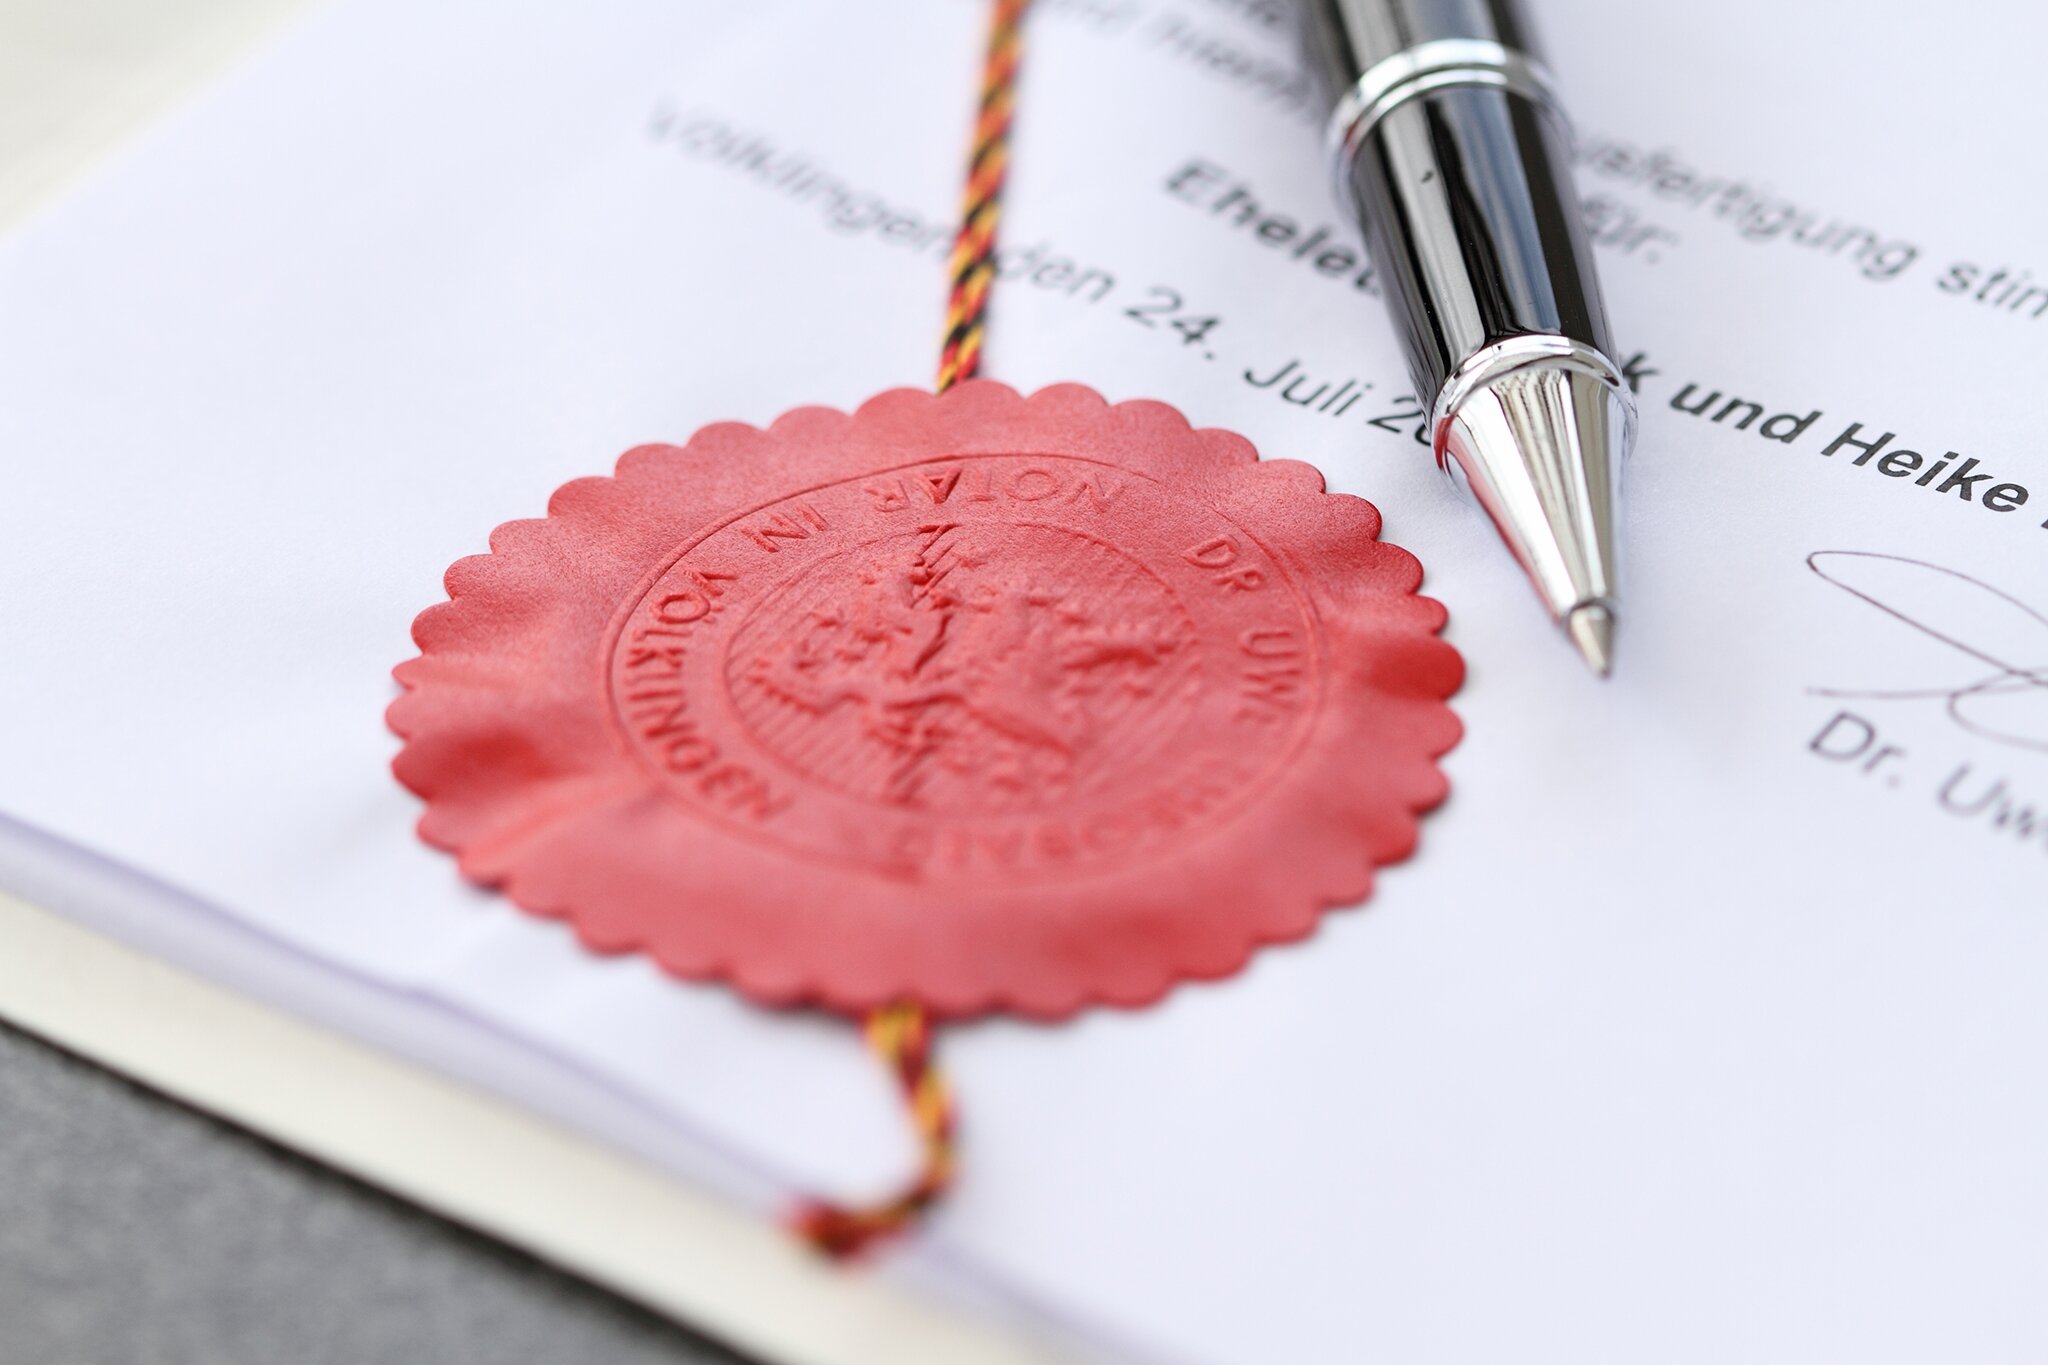 Schimbări majore în eliberarea certificatelor de moștenitor. Competența exclusivă a notarilor în deschiderea succesiunilor ar putea fi eliminată